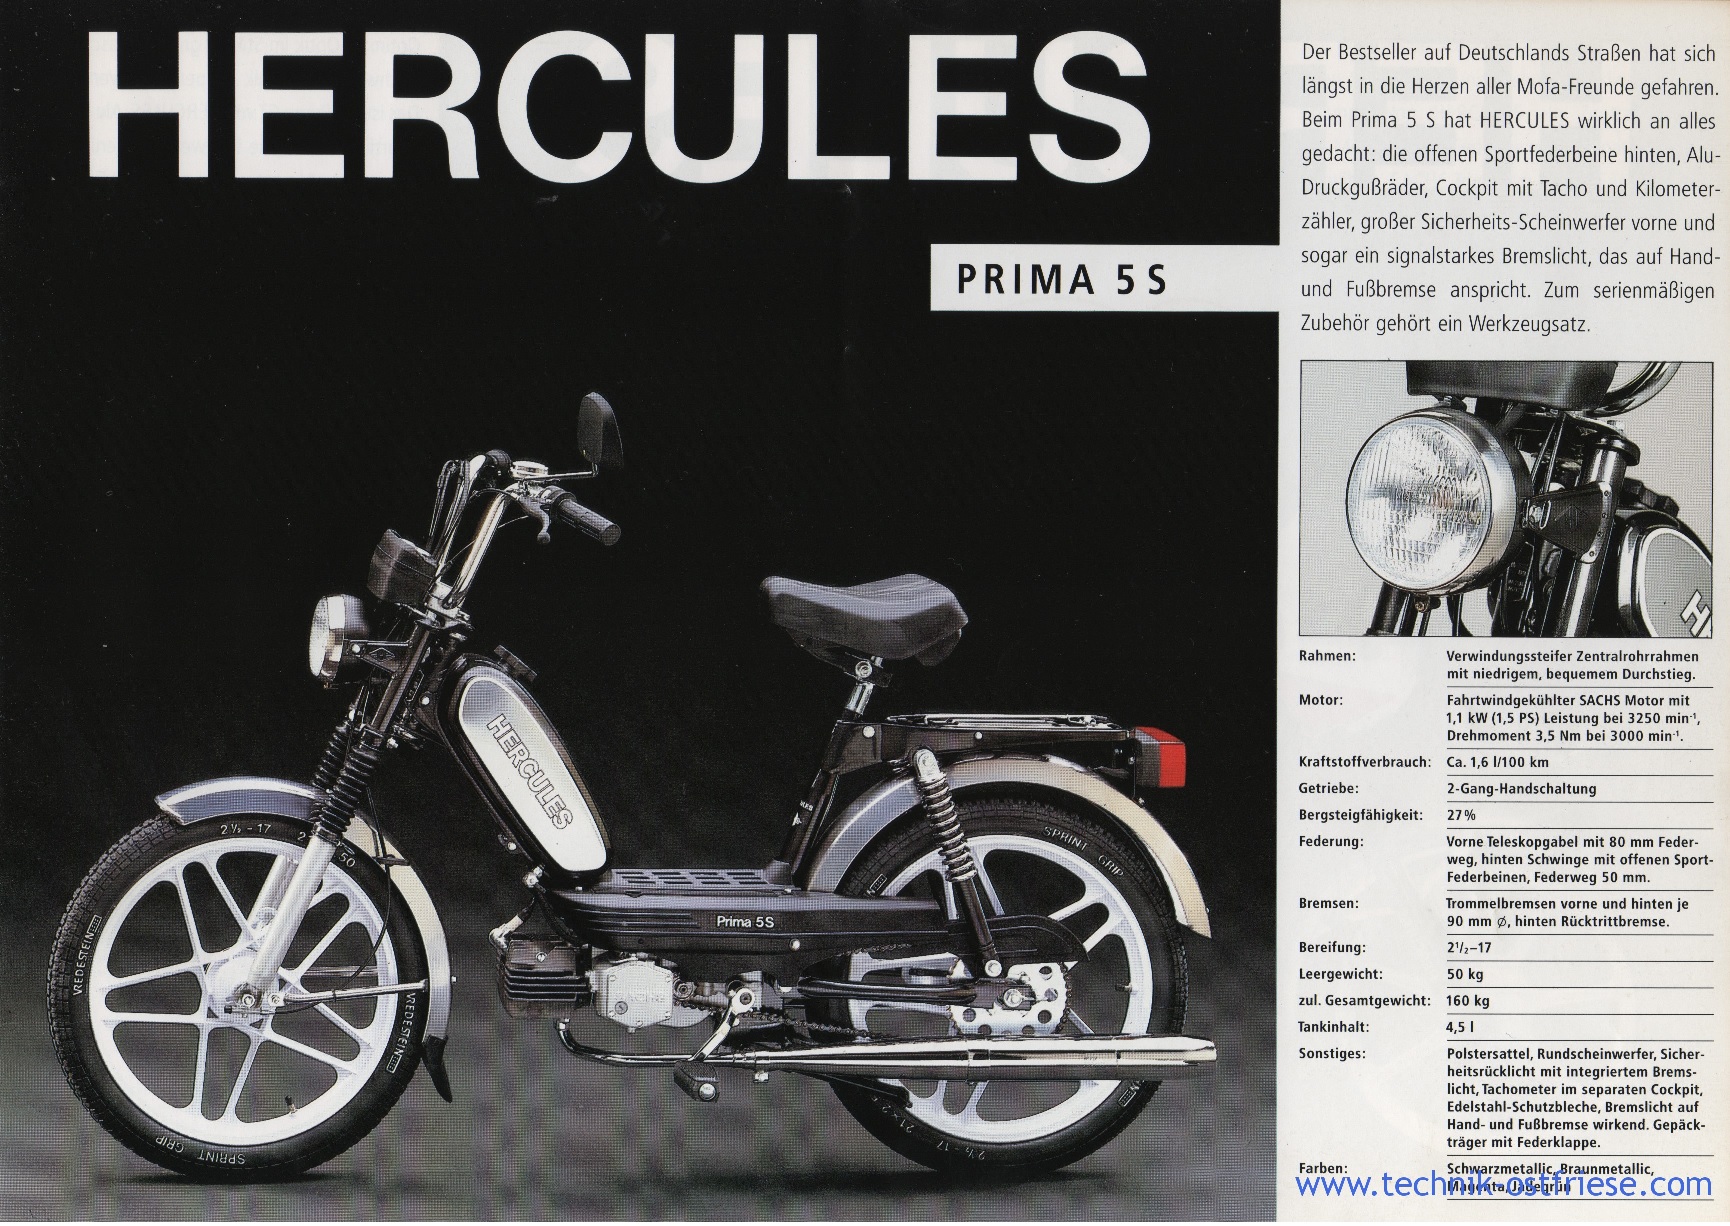 Hercules Models « Myrons Mopeds